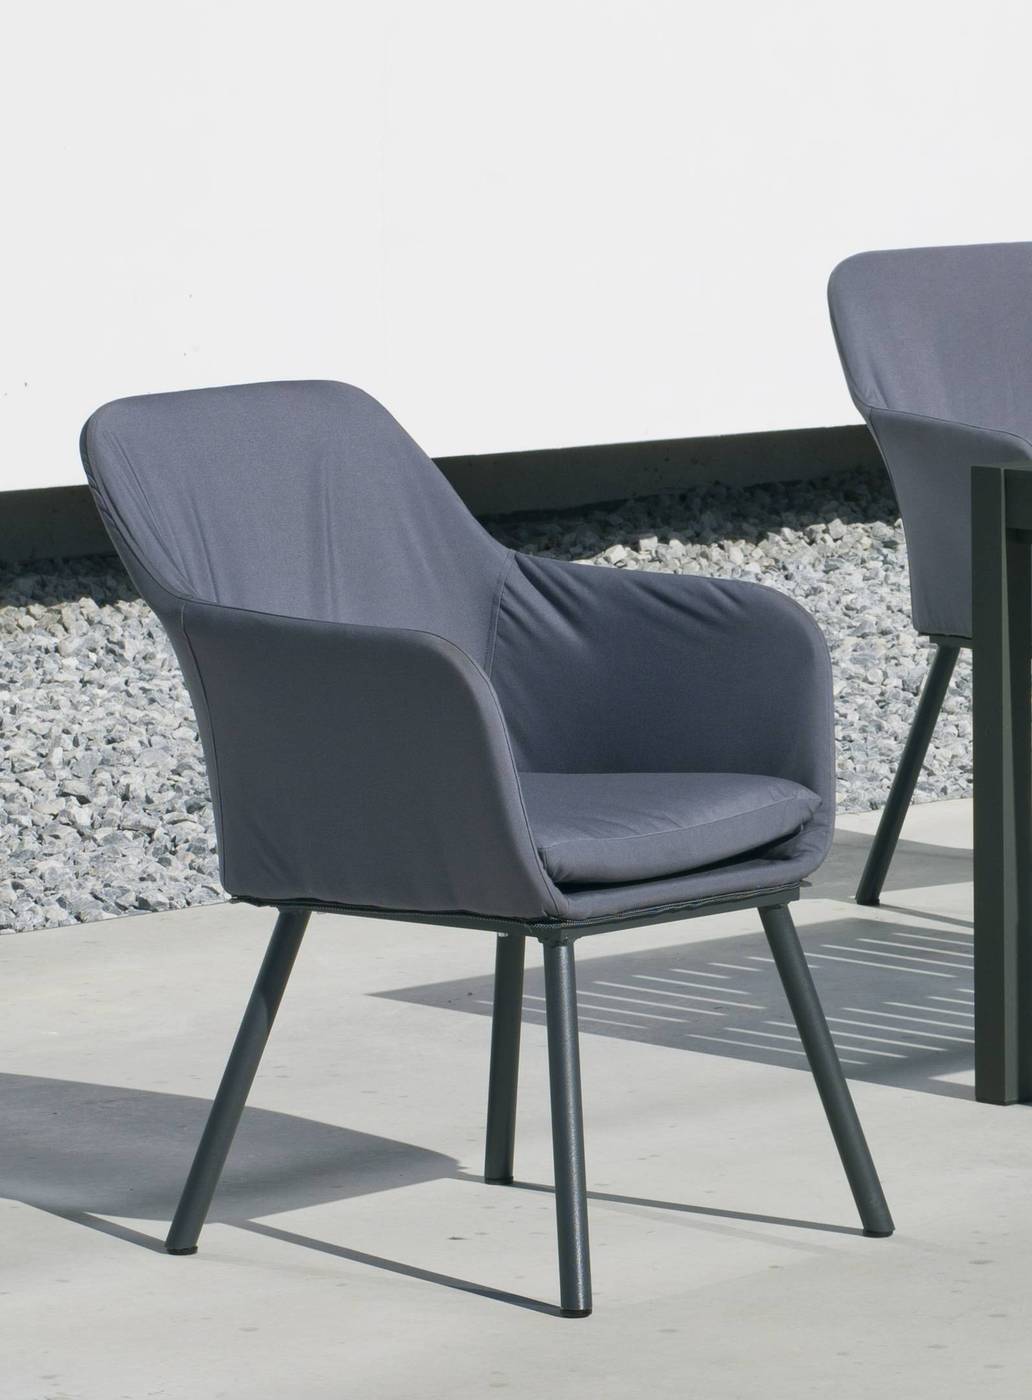 Set Aluminio Palma-Amadeus 90-4 - Conjunto aluminio luxe estilo contemporáneo: mesa cuadrada de 90 cm. + 4 sillones tapizados con tela impermeable. Disponible en color blanco y antracita.